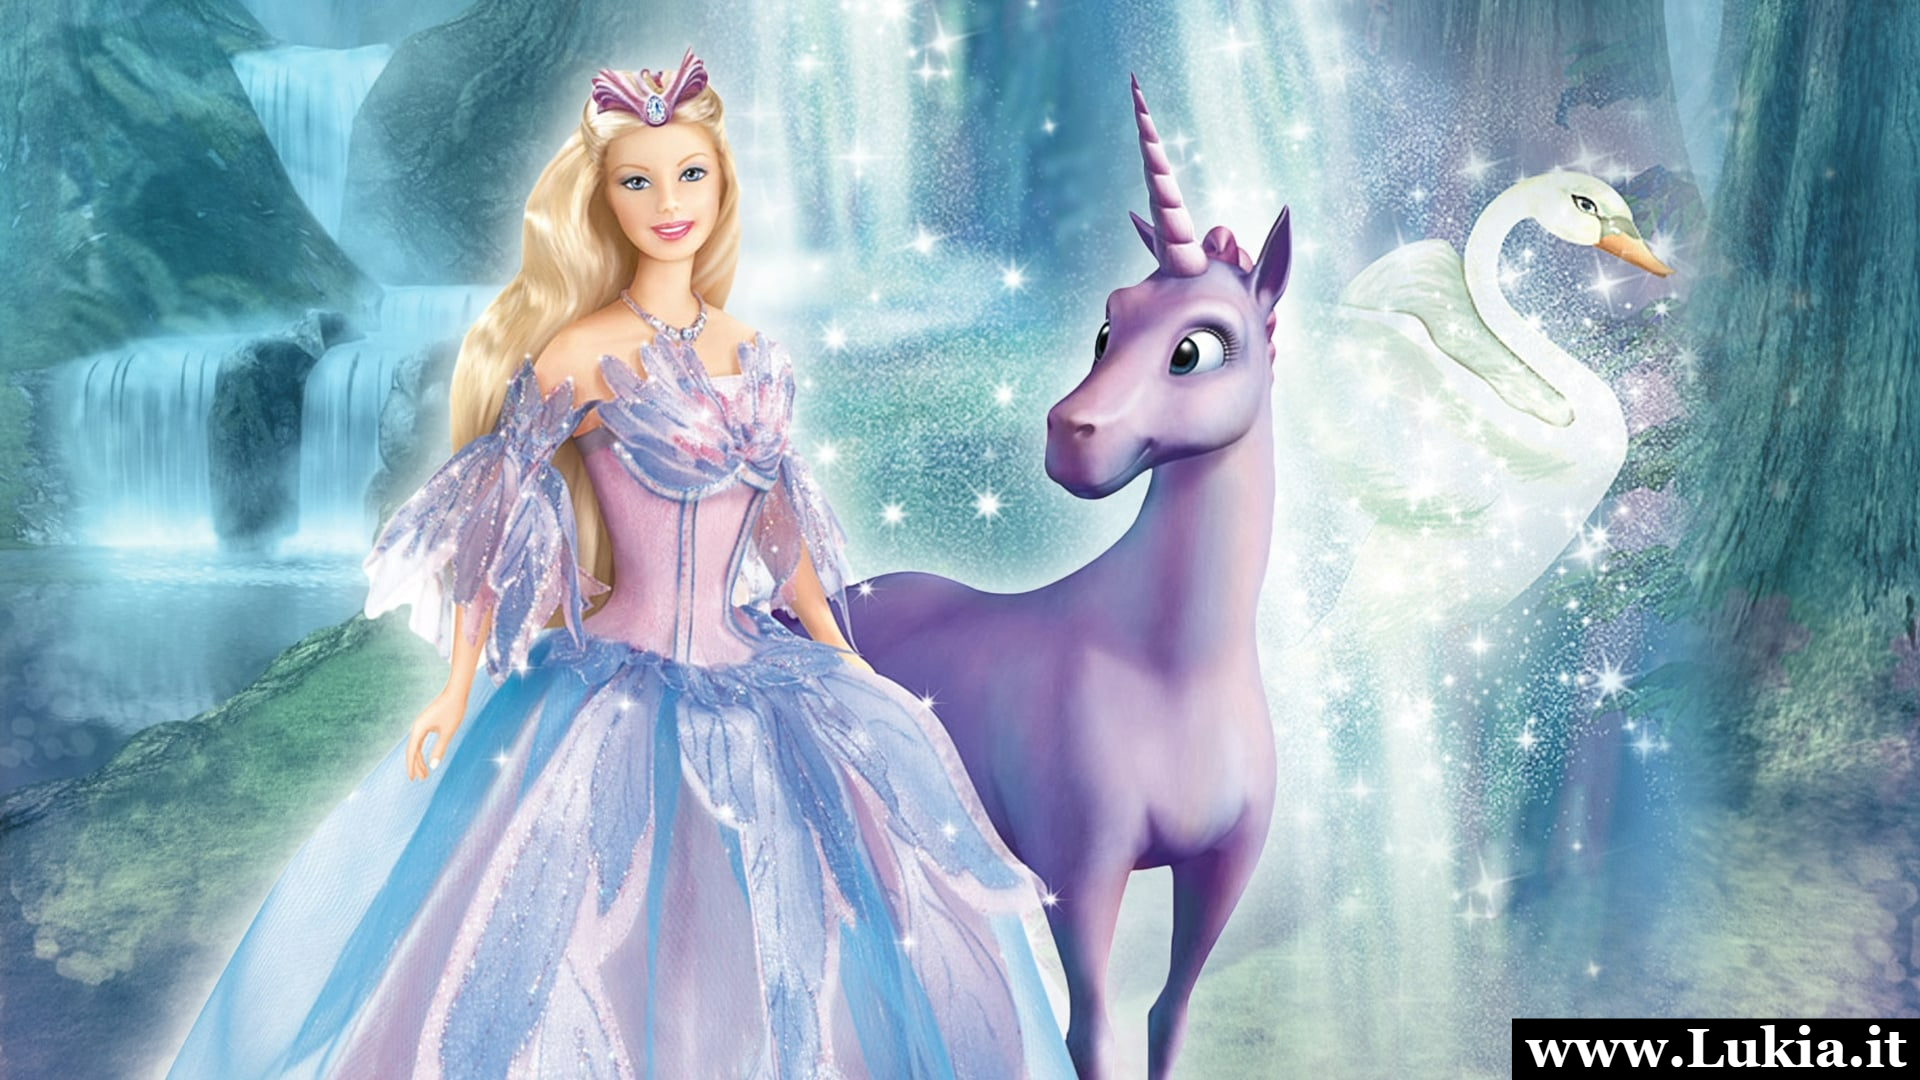 Barbie il lago dei cigni: un'incantevole avventura di amore e magia Il film 